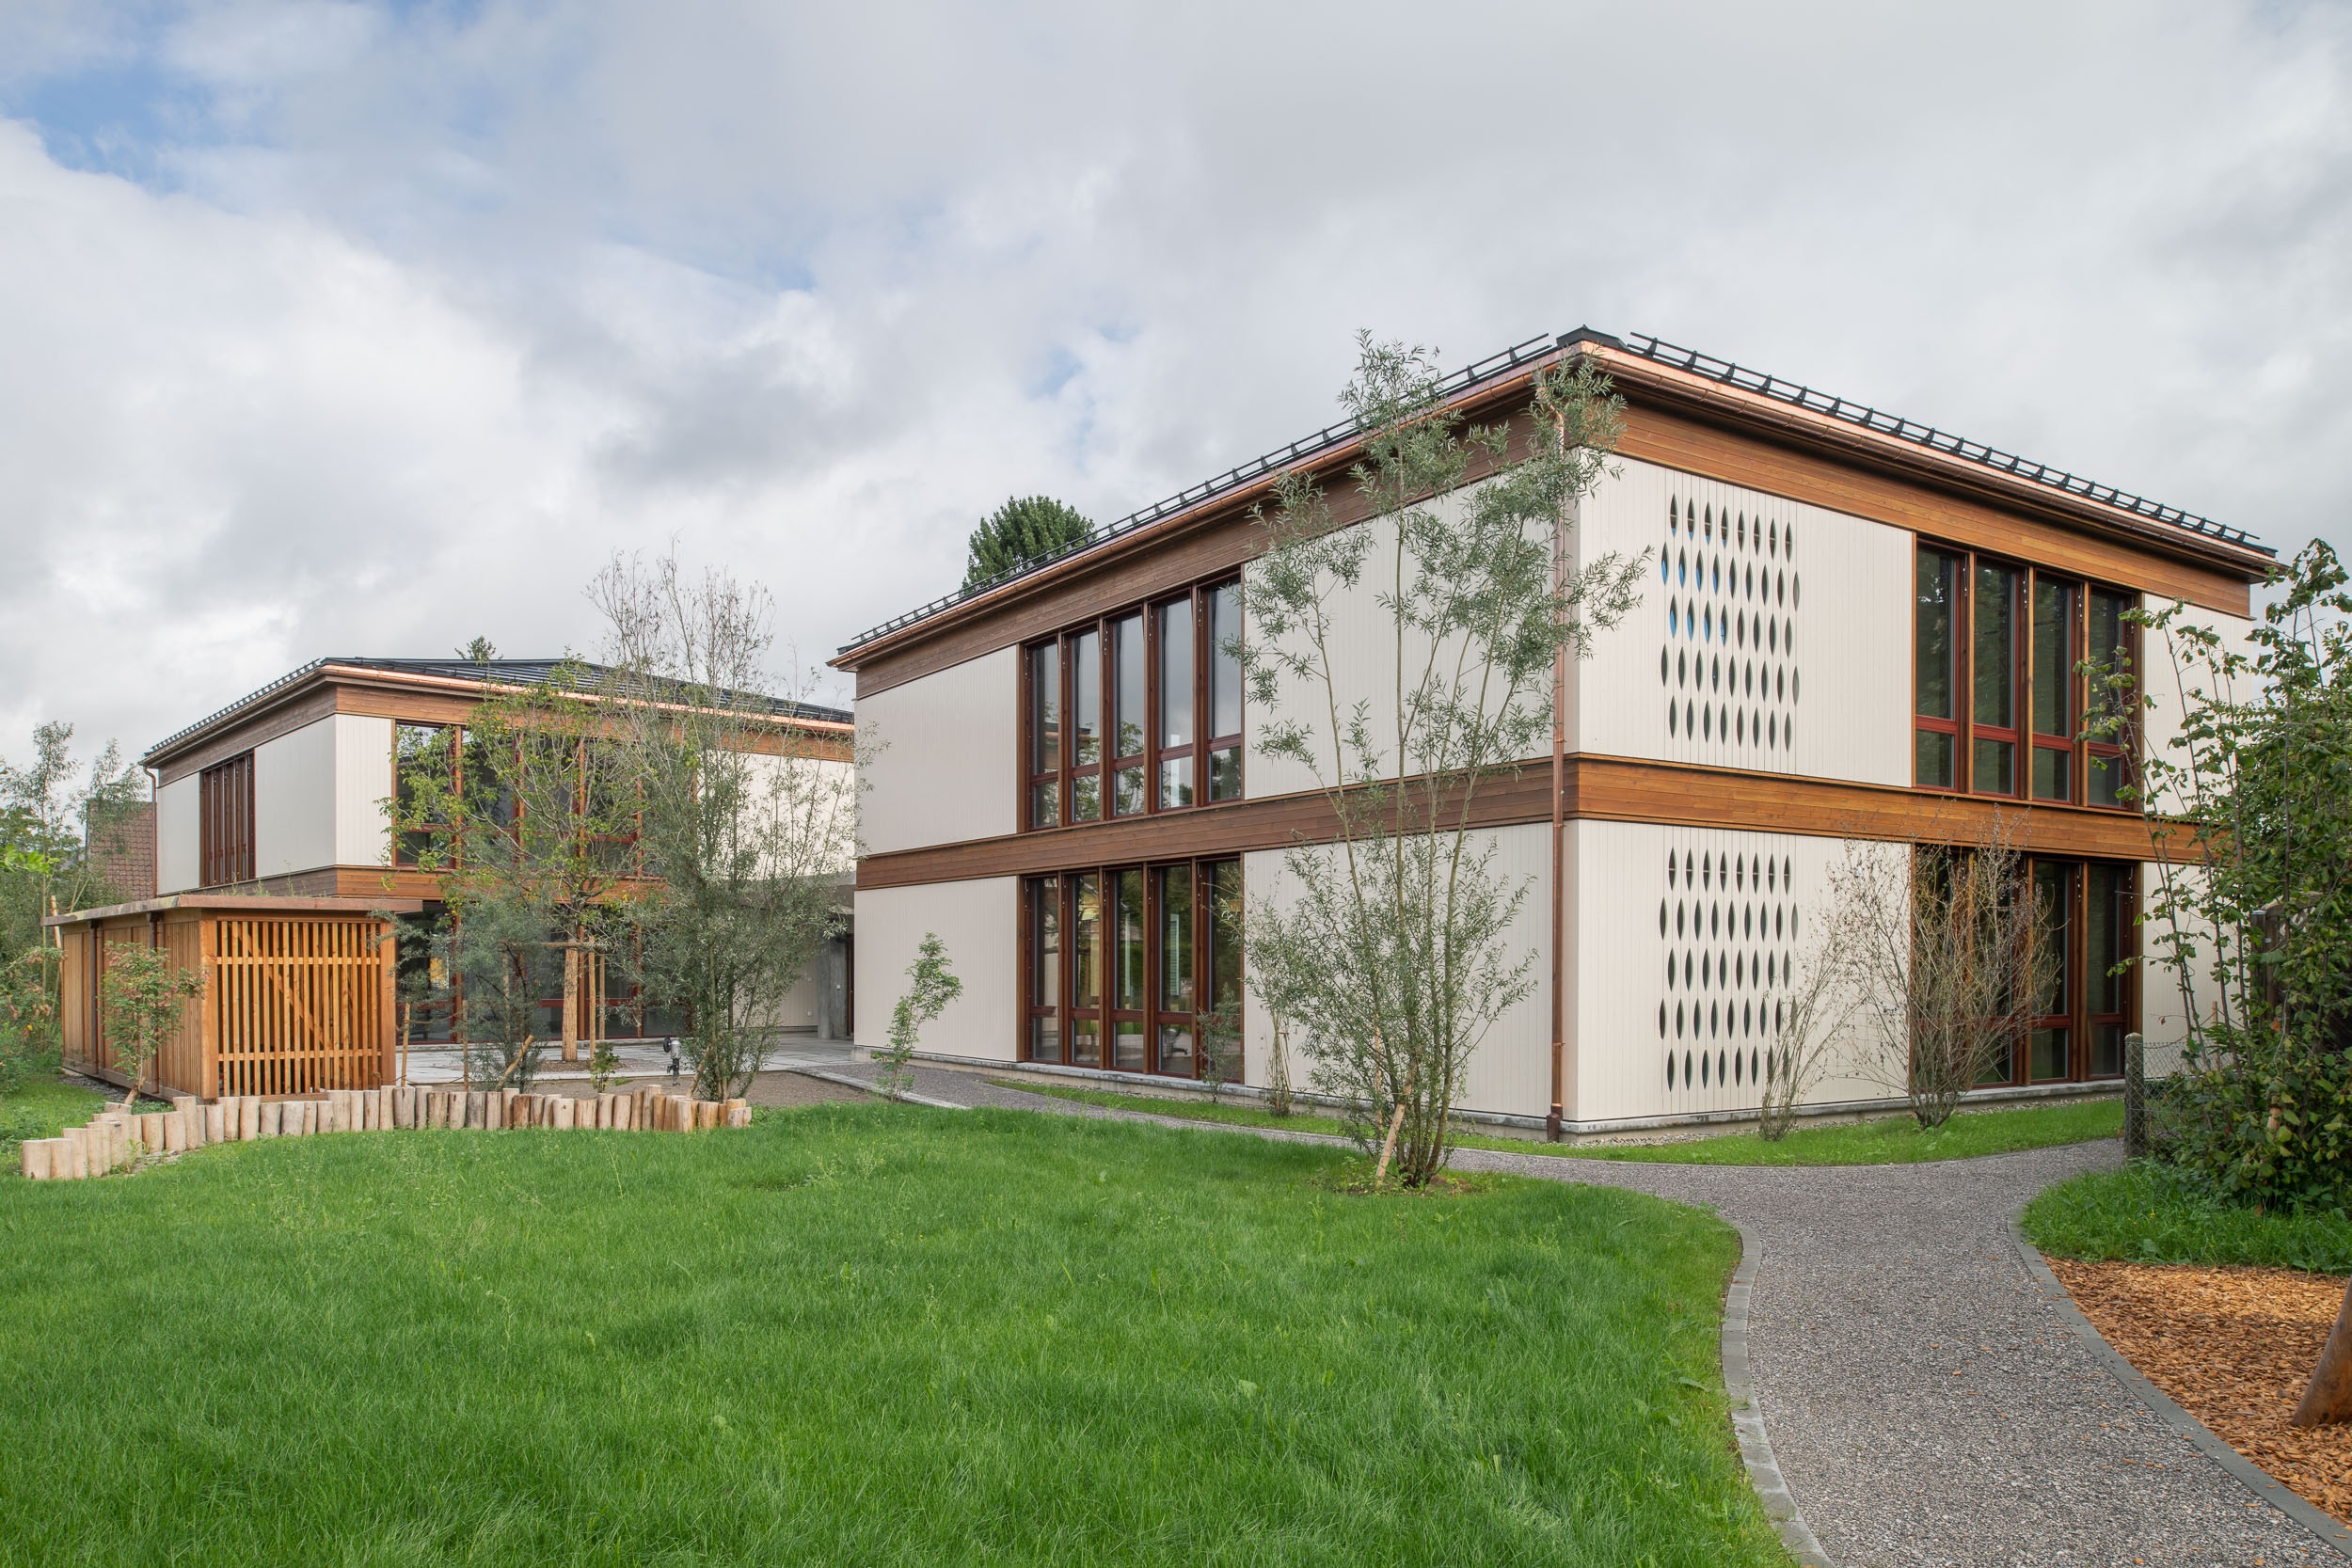 rollimarchini AG, Architekten Bern, Architektur, Vierfachkindergärten Herzogenbuchsee, Wettbewerb, Neubau, Bildung, Schule, Kindergarten